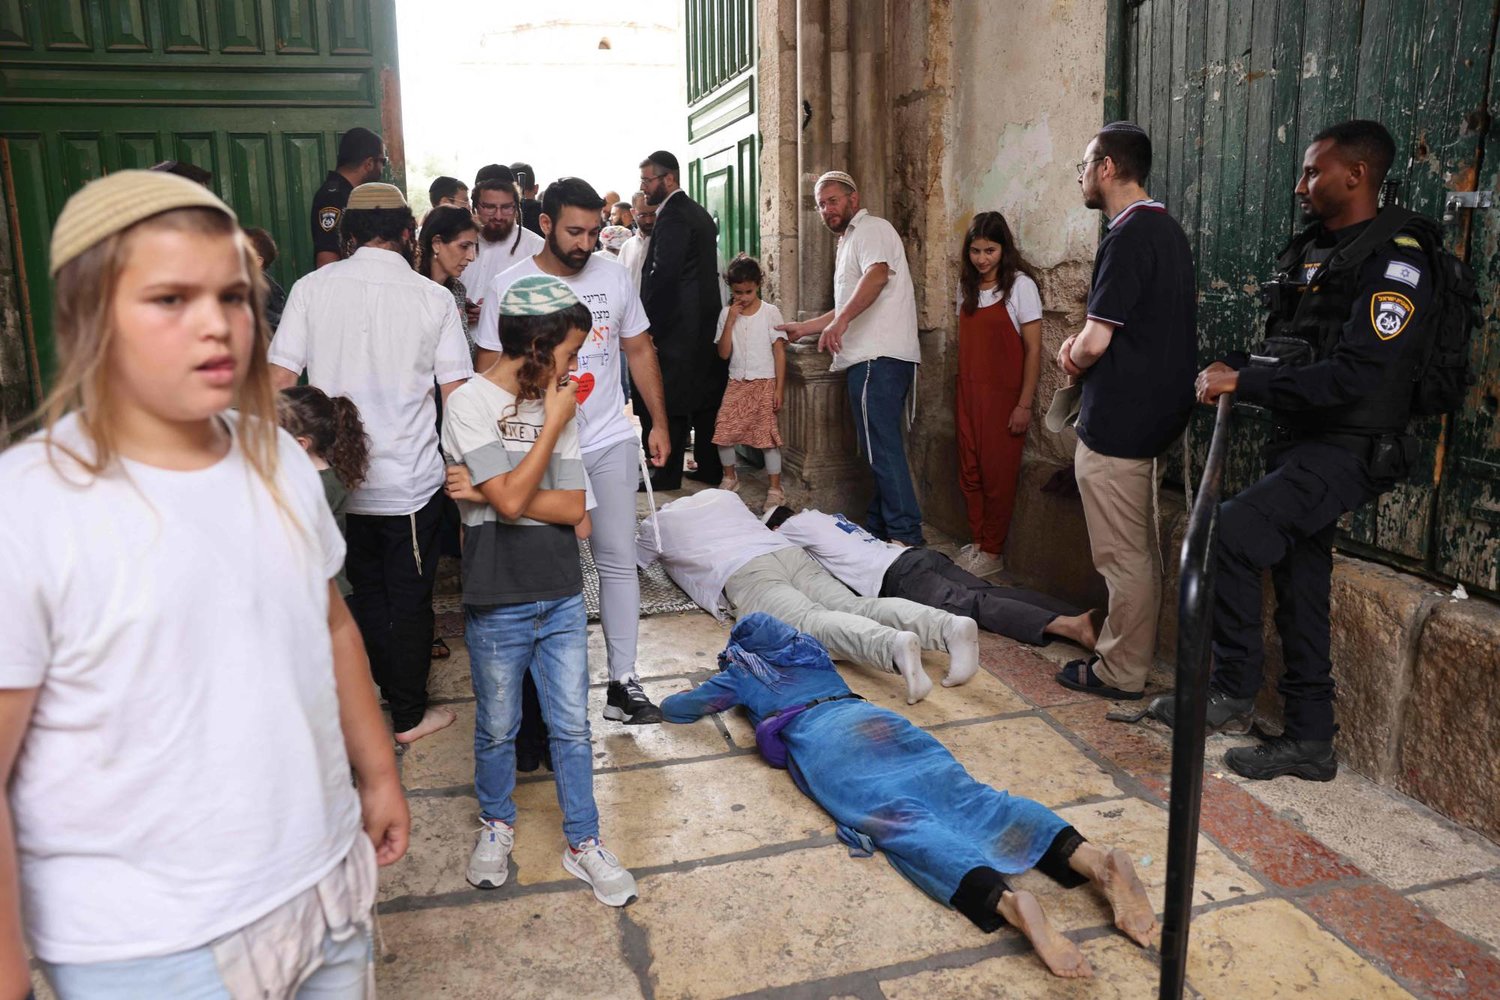 يهود يمارسون الطقوس الدينيو عند أحد مداخل مجمع المسجد الأقصى في البلدة القديمة في القدس (أ.ف.ب)